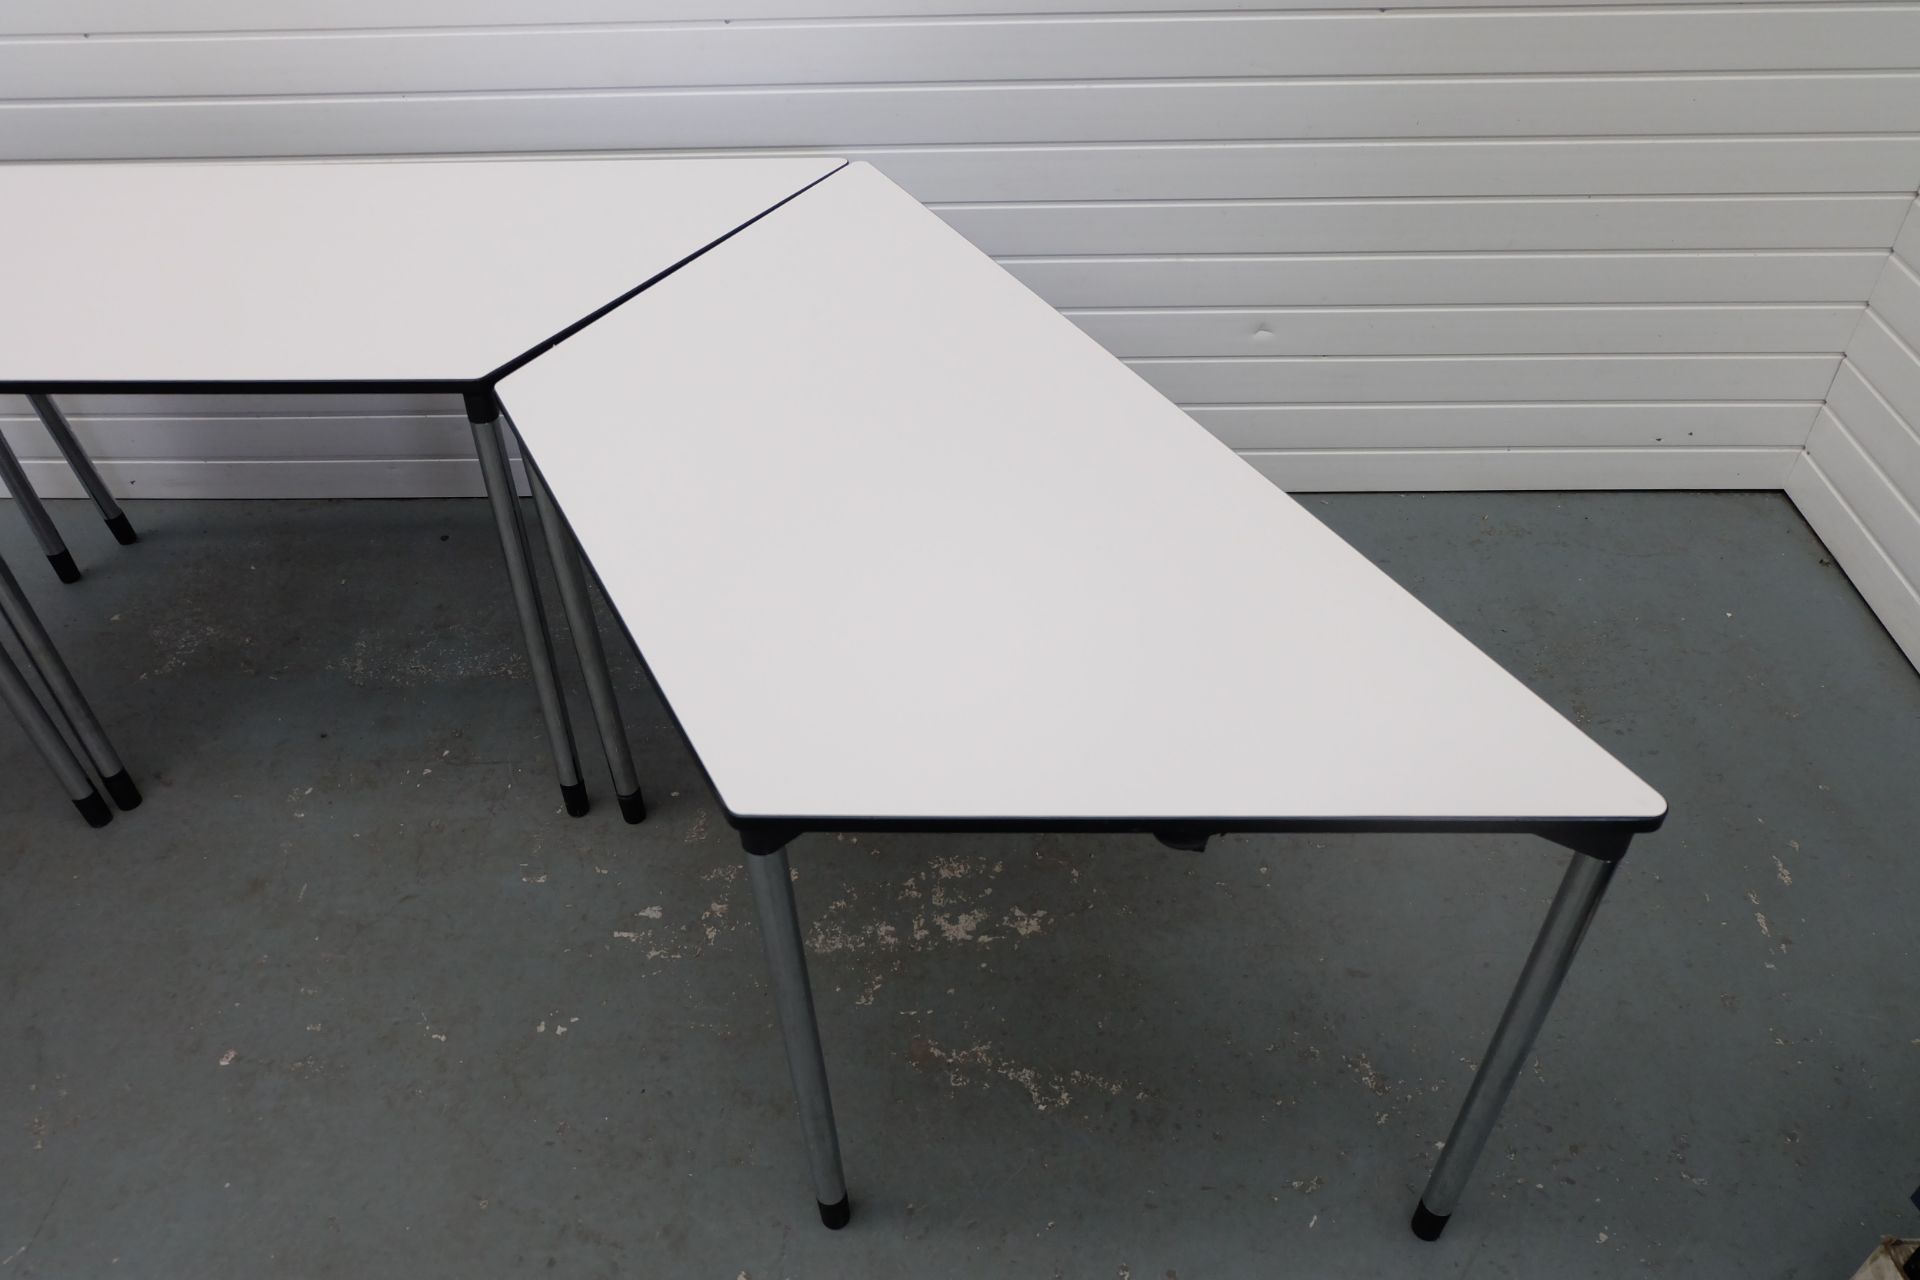 3 x Trapeziod Shape Desks With Metal Legs. Size 1470mm x 650mm x 750mm High. - Bild 4 aus 4